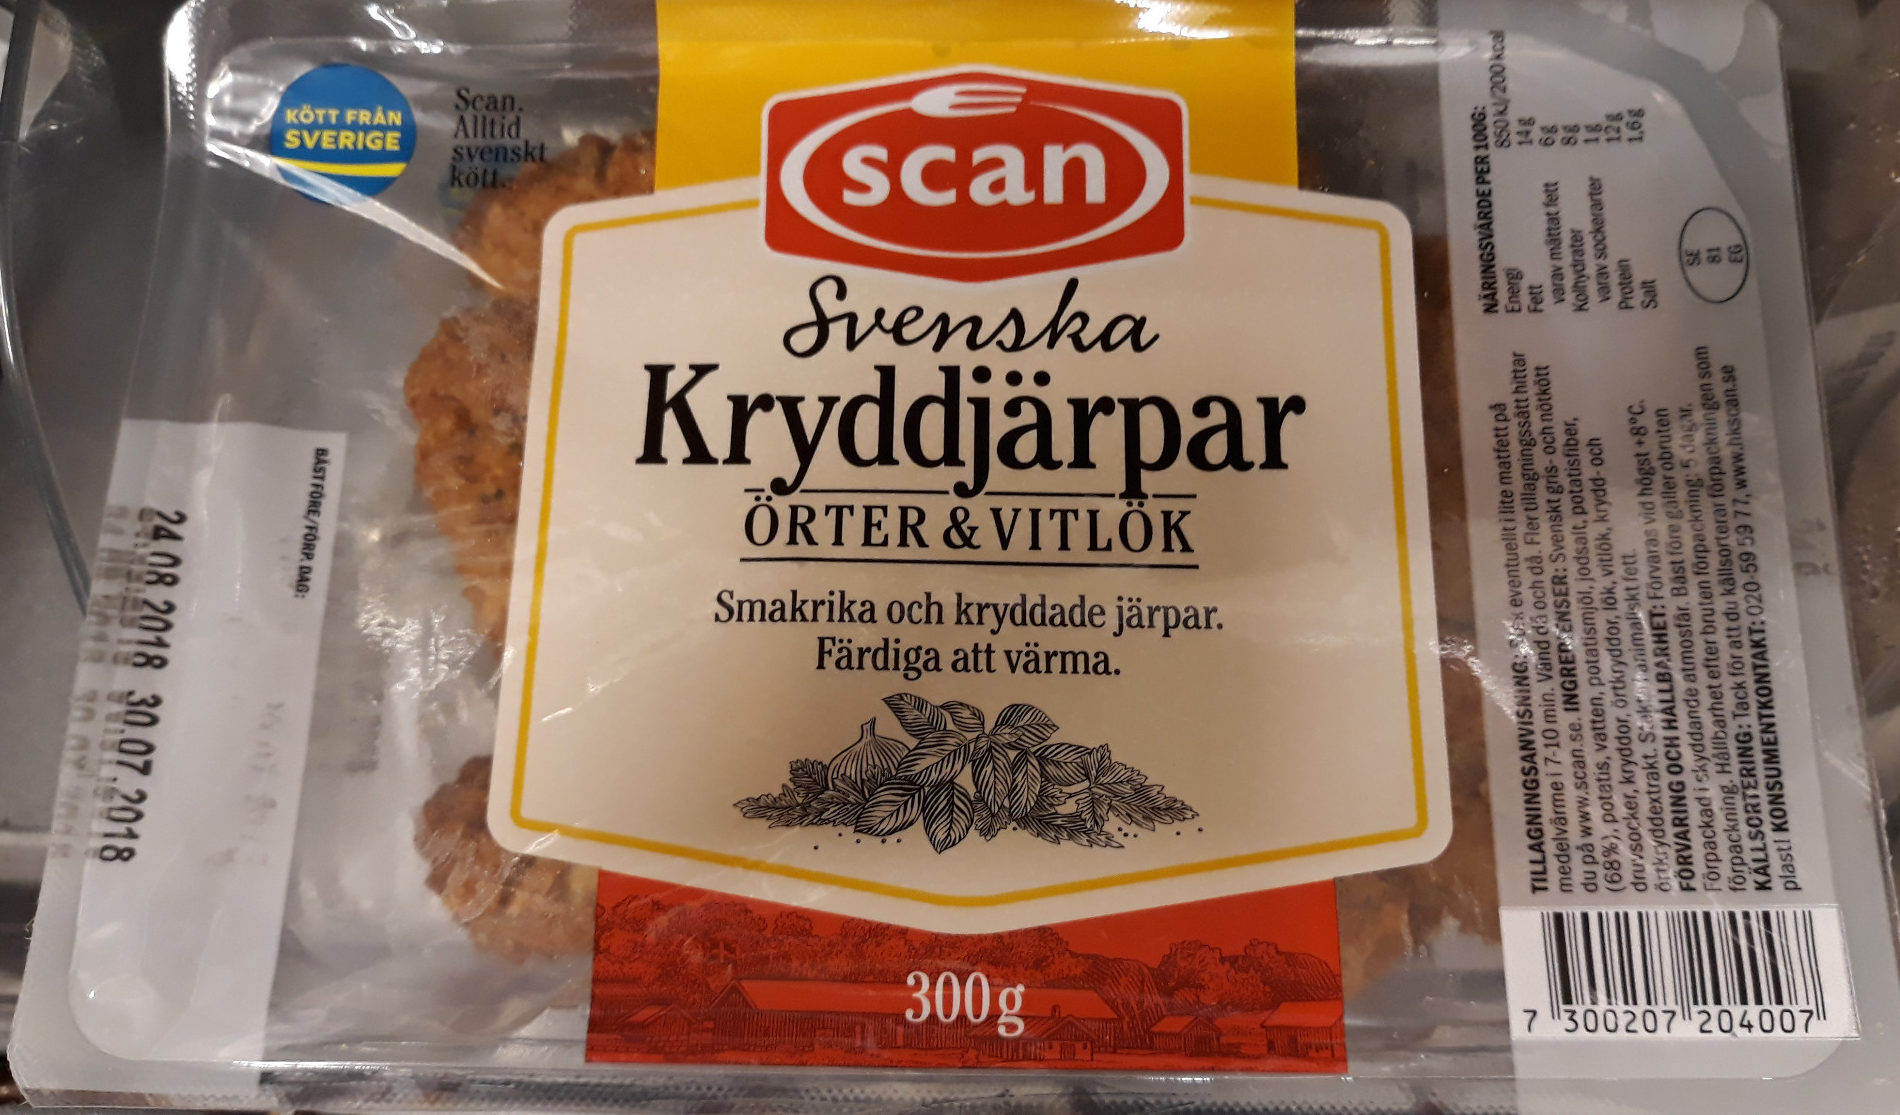 Svenska kryddjärpar örter och vitlök - Produkt - sv